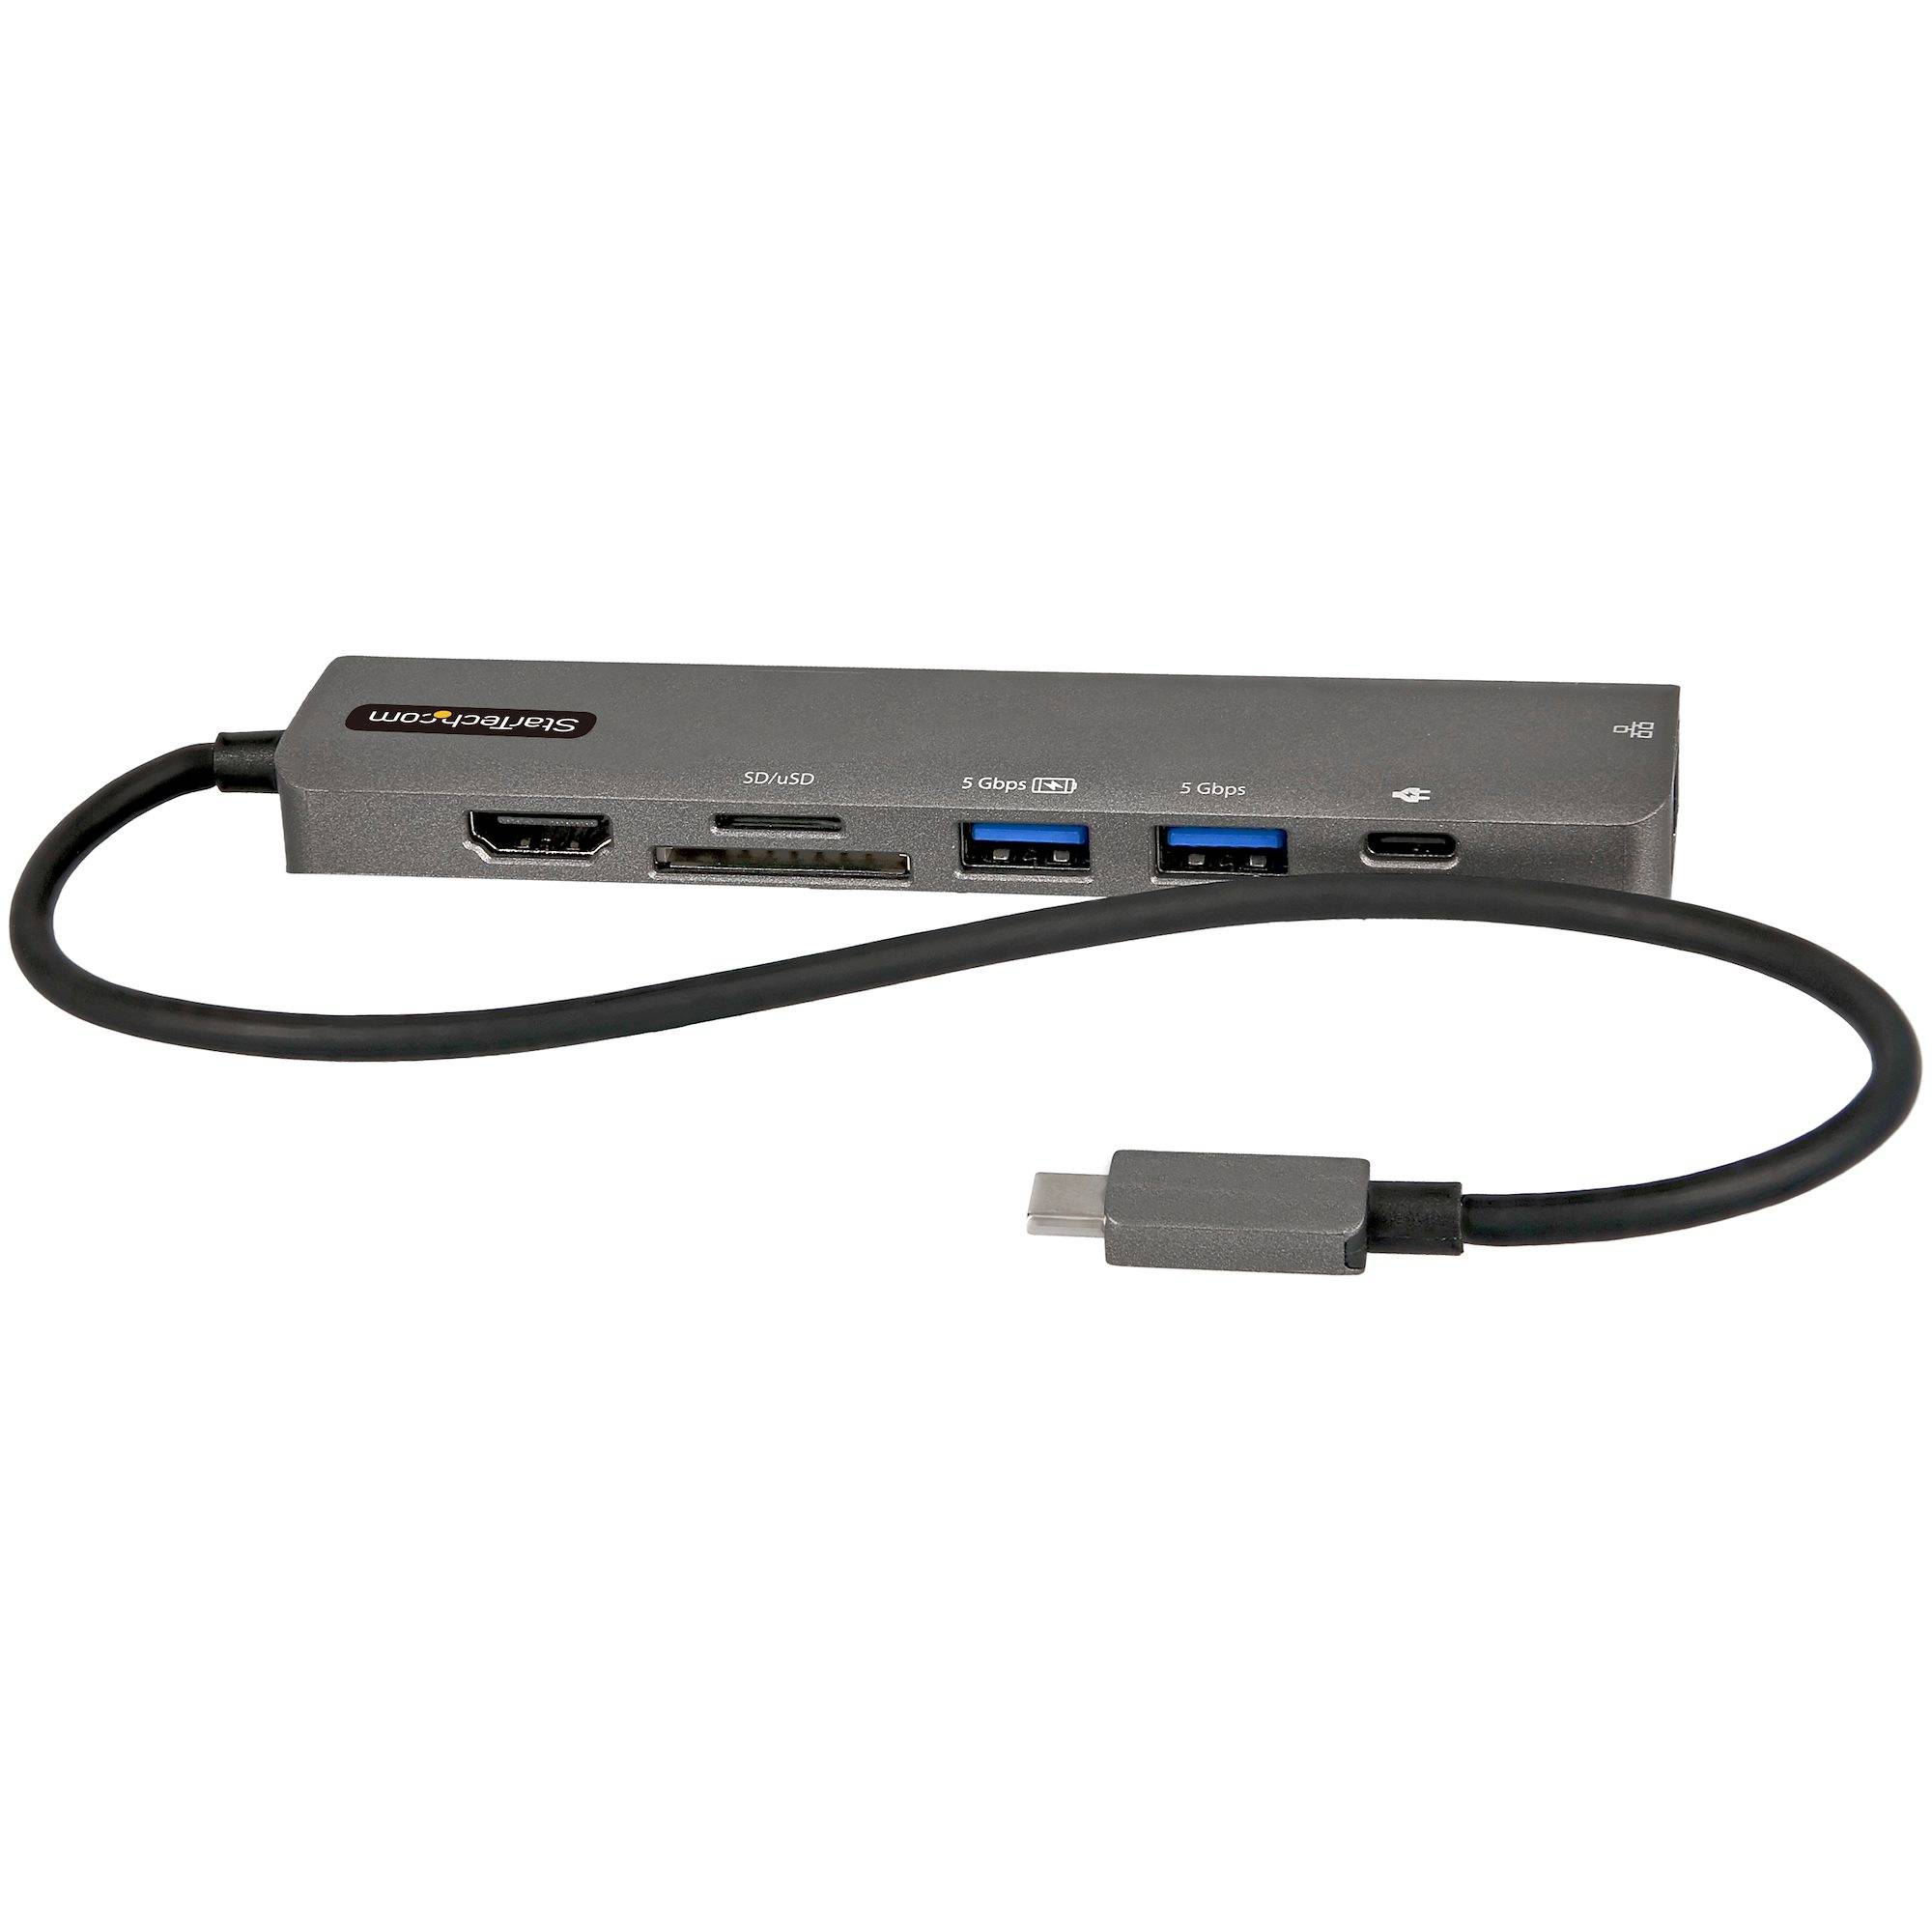 Rca Informatique - Image du produit : ADAPTATEUR MULTIPORT USB-C 4K HDMI 2.0 - 100W PD PASSTHROUGH